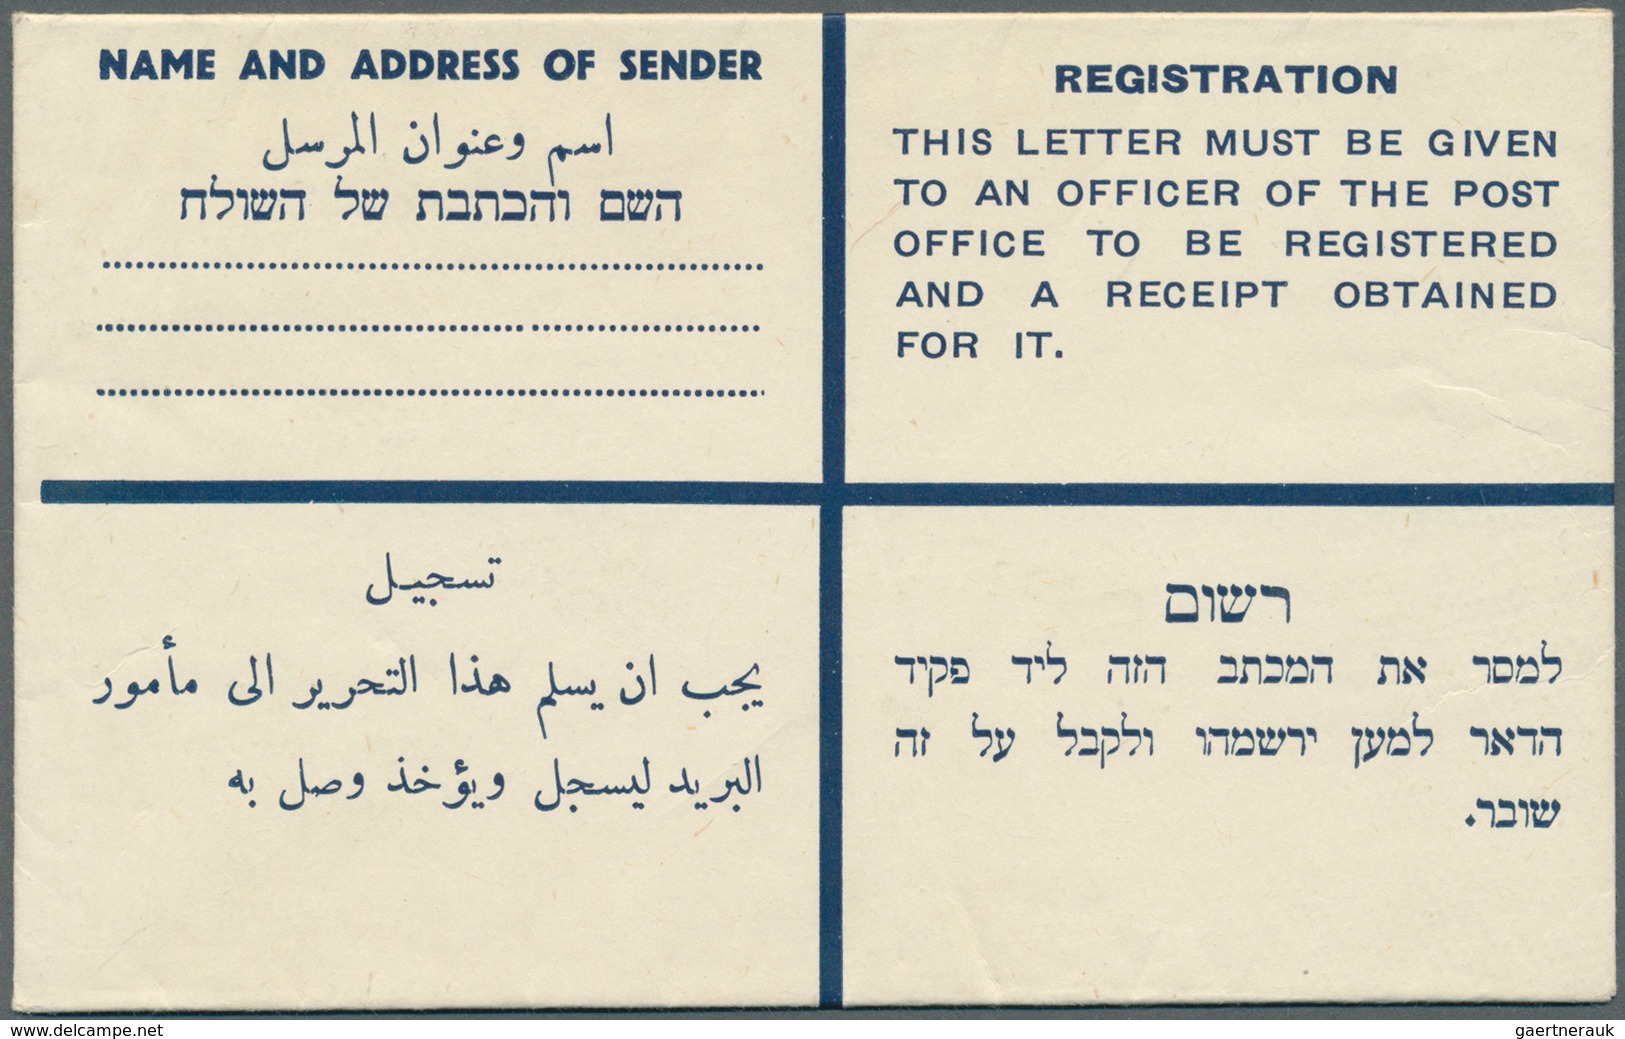 09608 Palästina: 1945, 15 M Registered Stationery Envelope With "SPECIMEN" Imprint. - Palästina